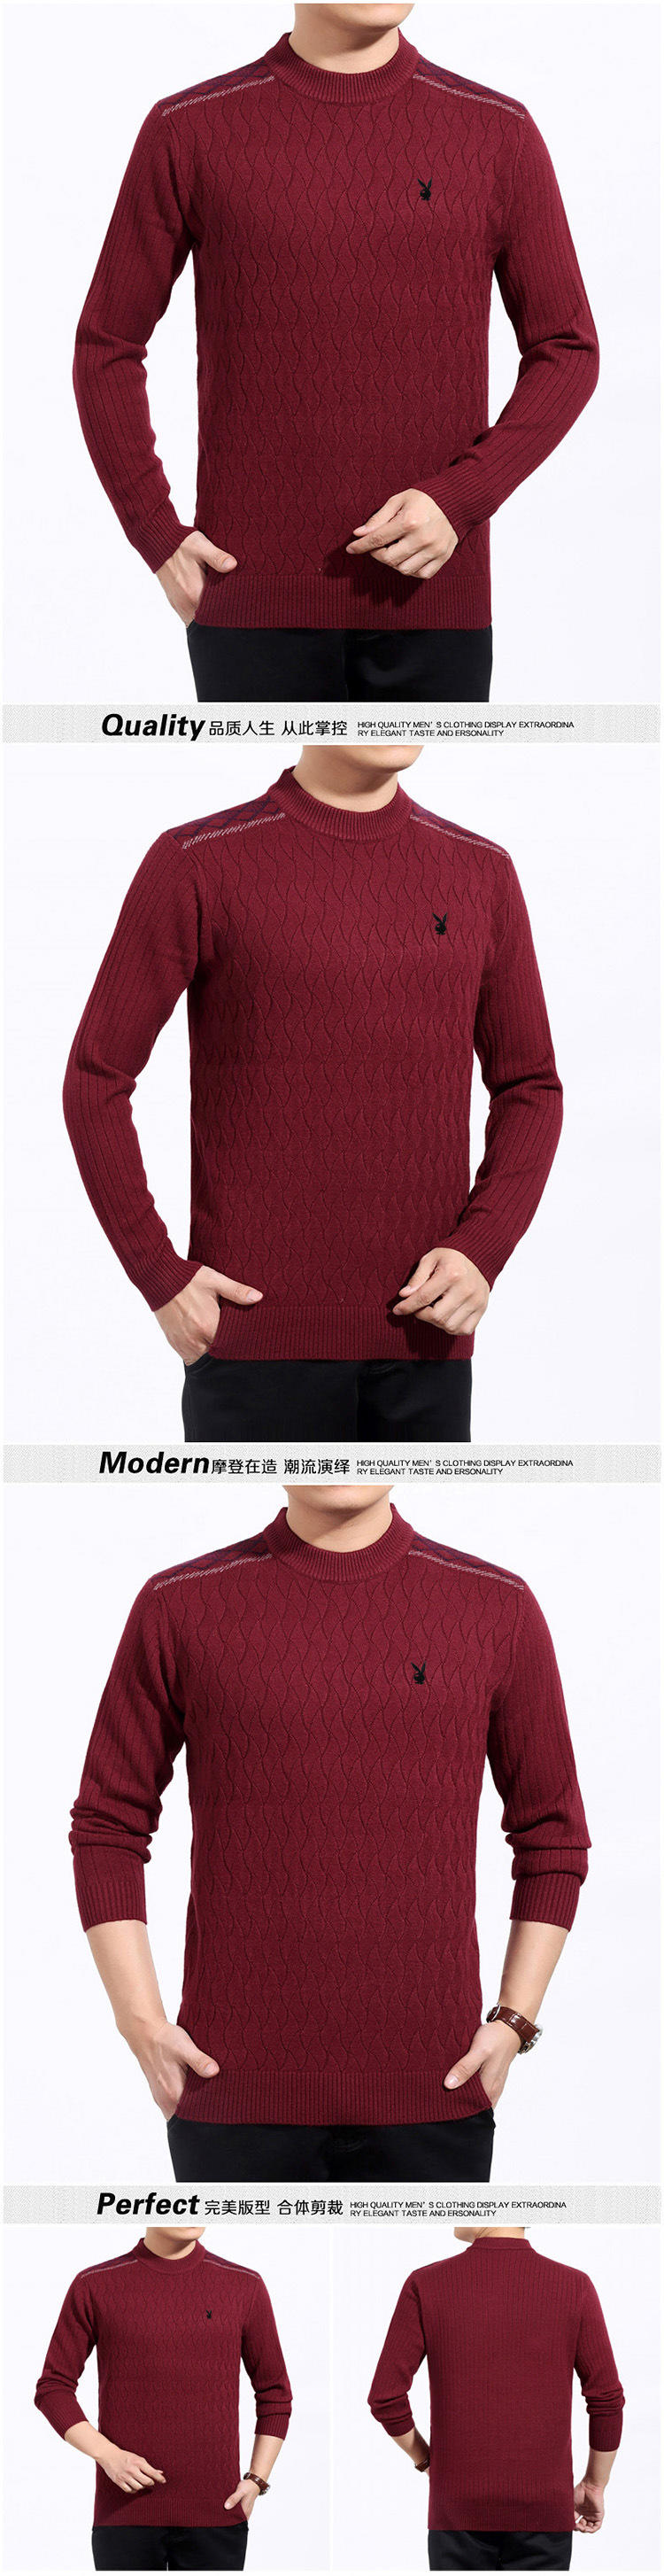 花花公子 2016冬季新款正品毛衣男士保暖舒适精品羊绒衫